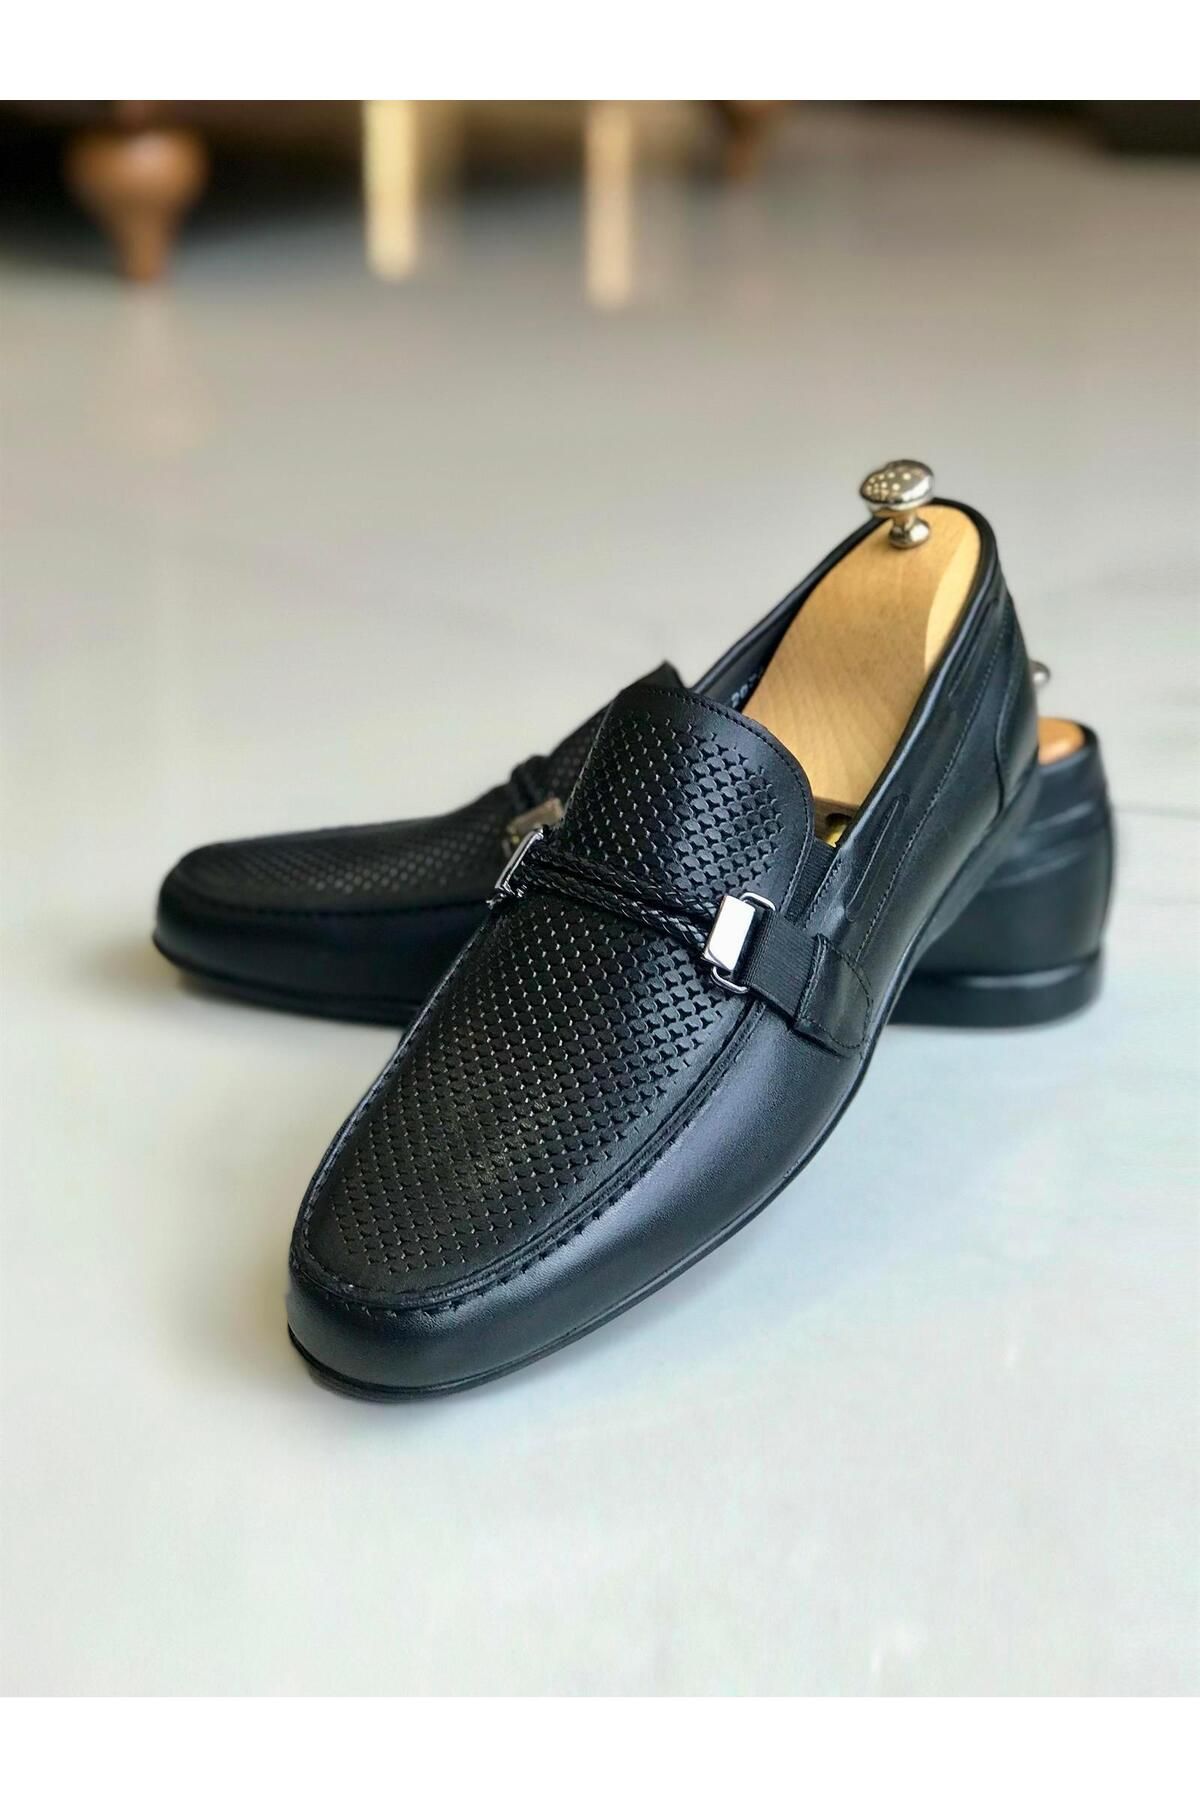 TerziAdemAltun İtalyan Stil Iç Dış Naturel Deri Erkek Ayakkabı Siyah T7843